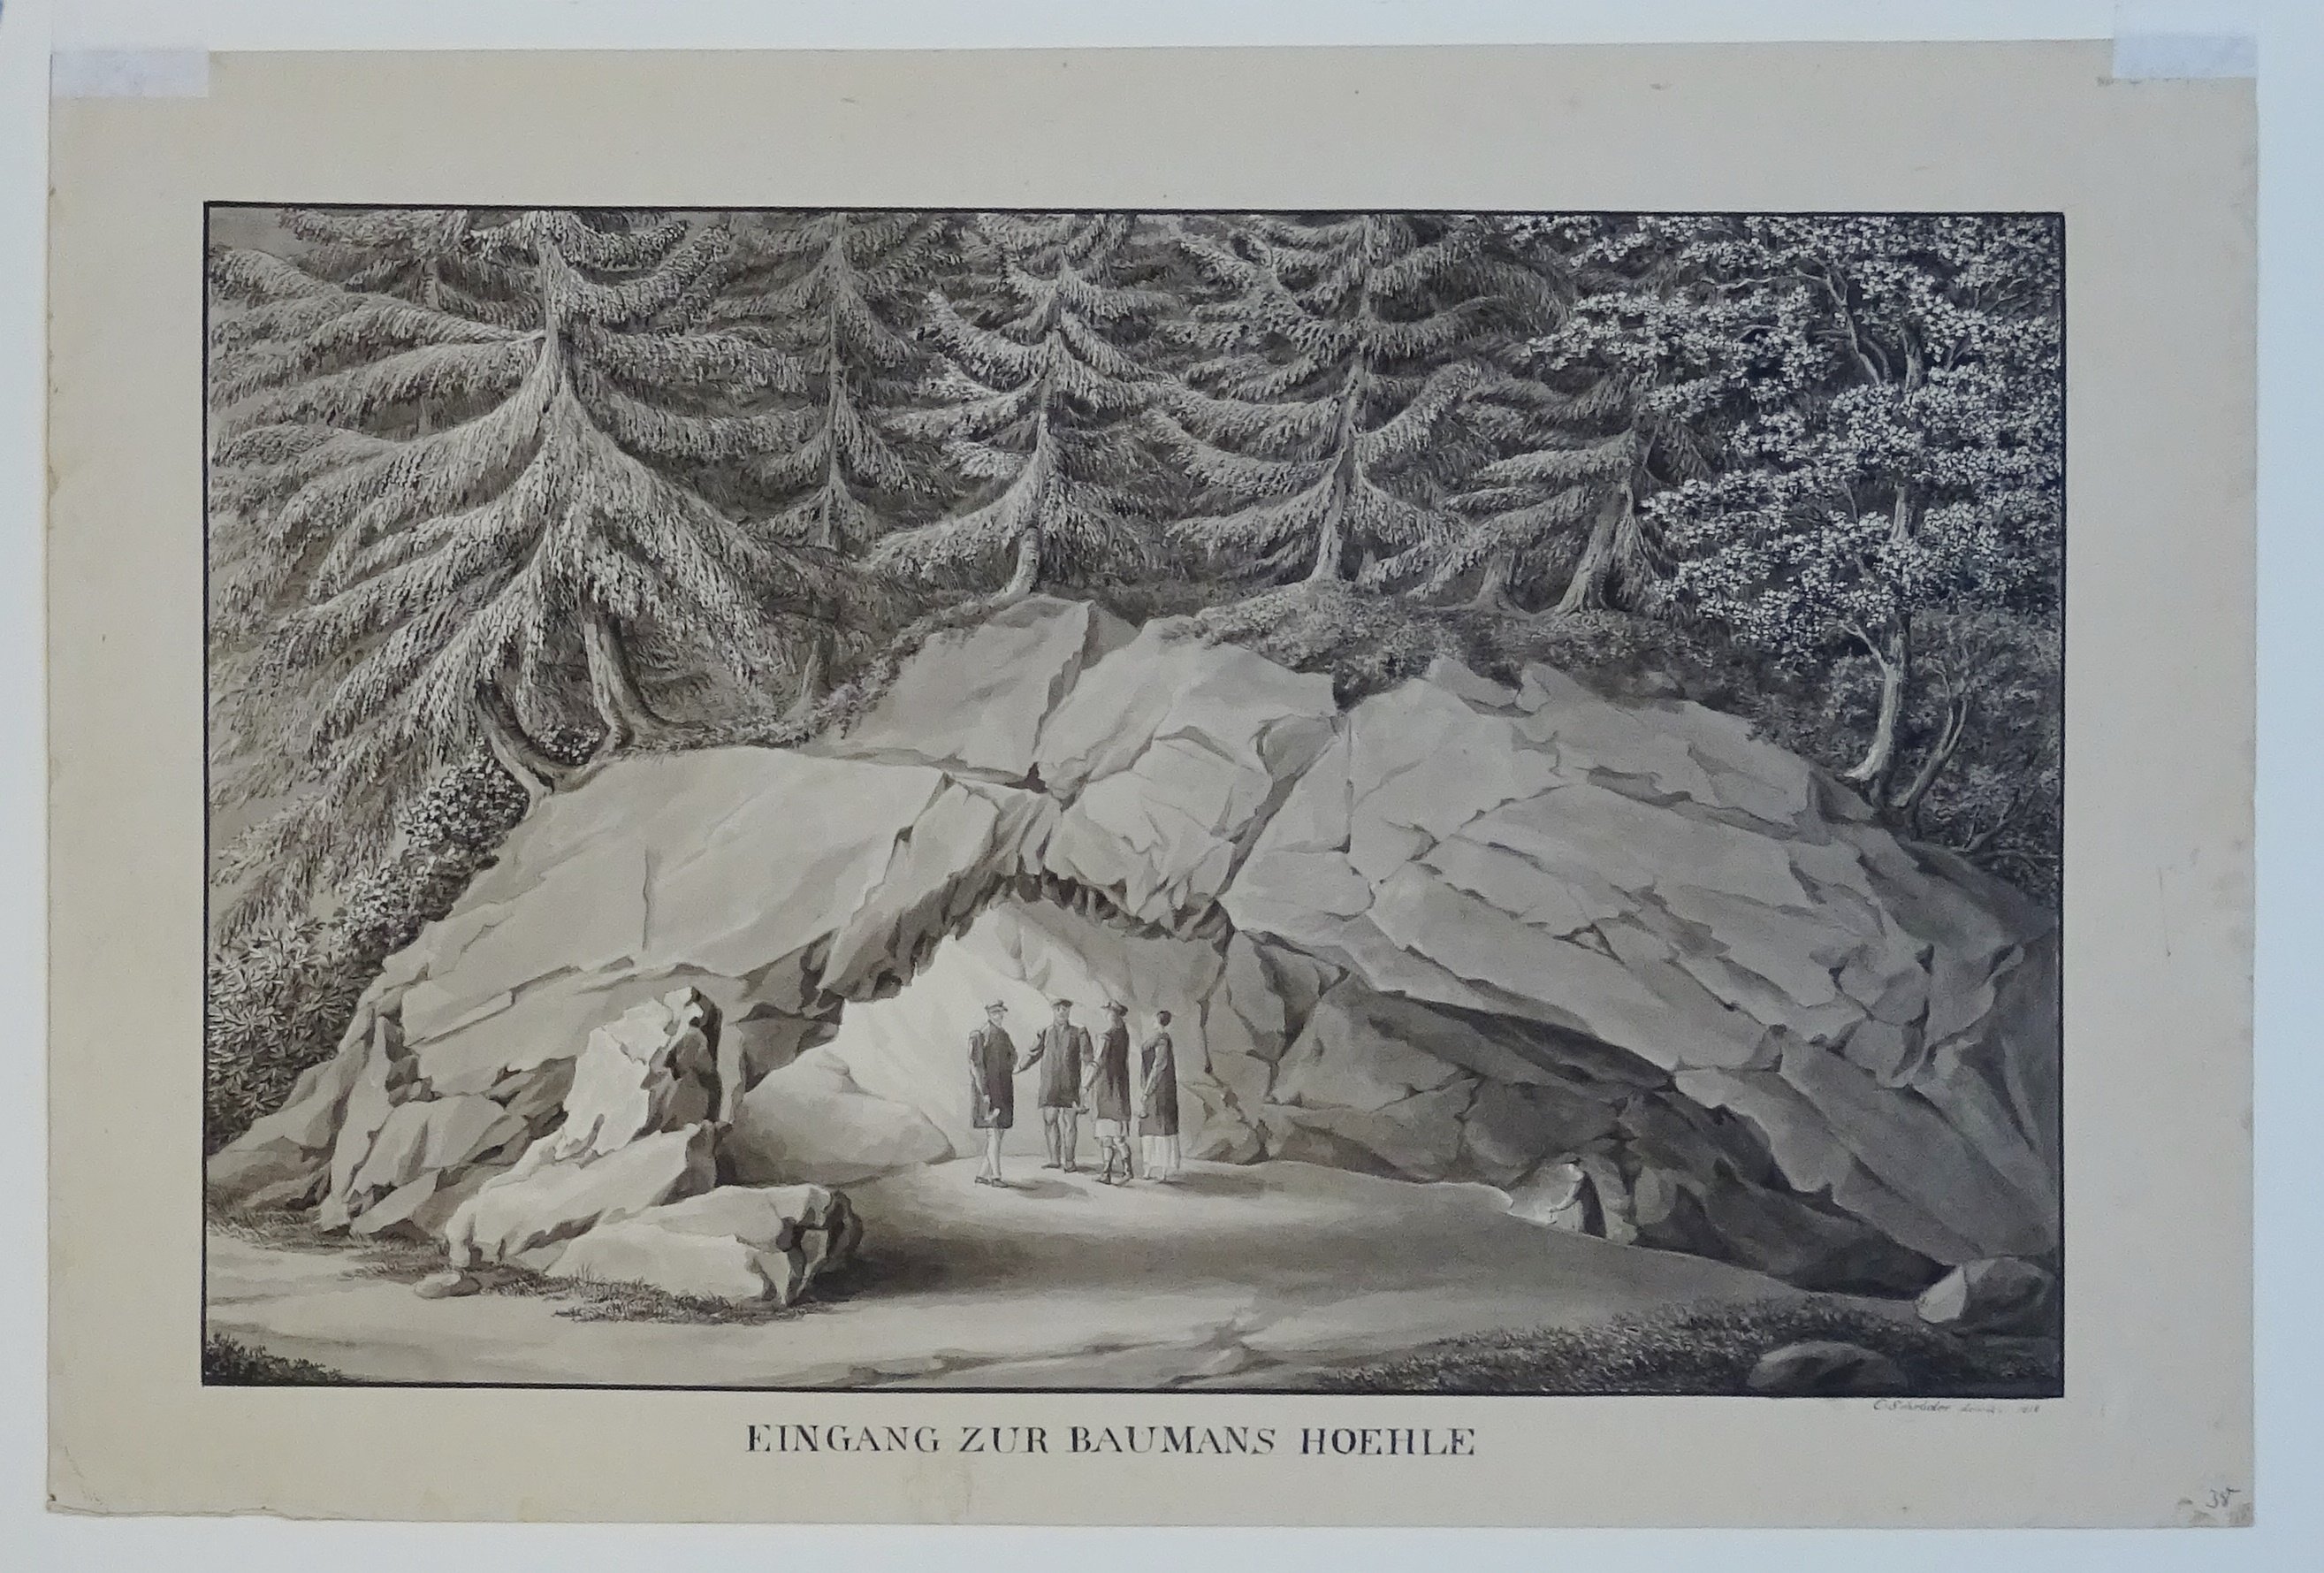 Eingang zur Baumannshöhle, von C. Schröder, 1818 (Schloß Wernigerode GmbH RR-F)